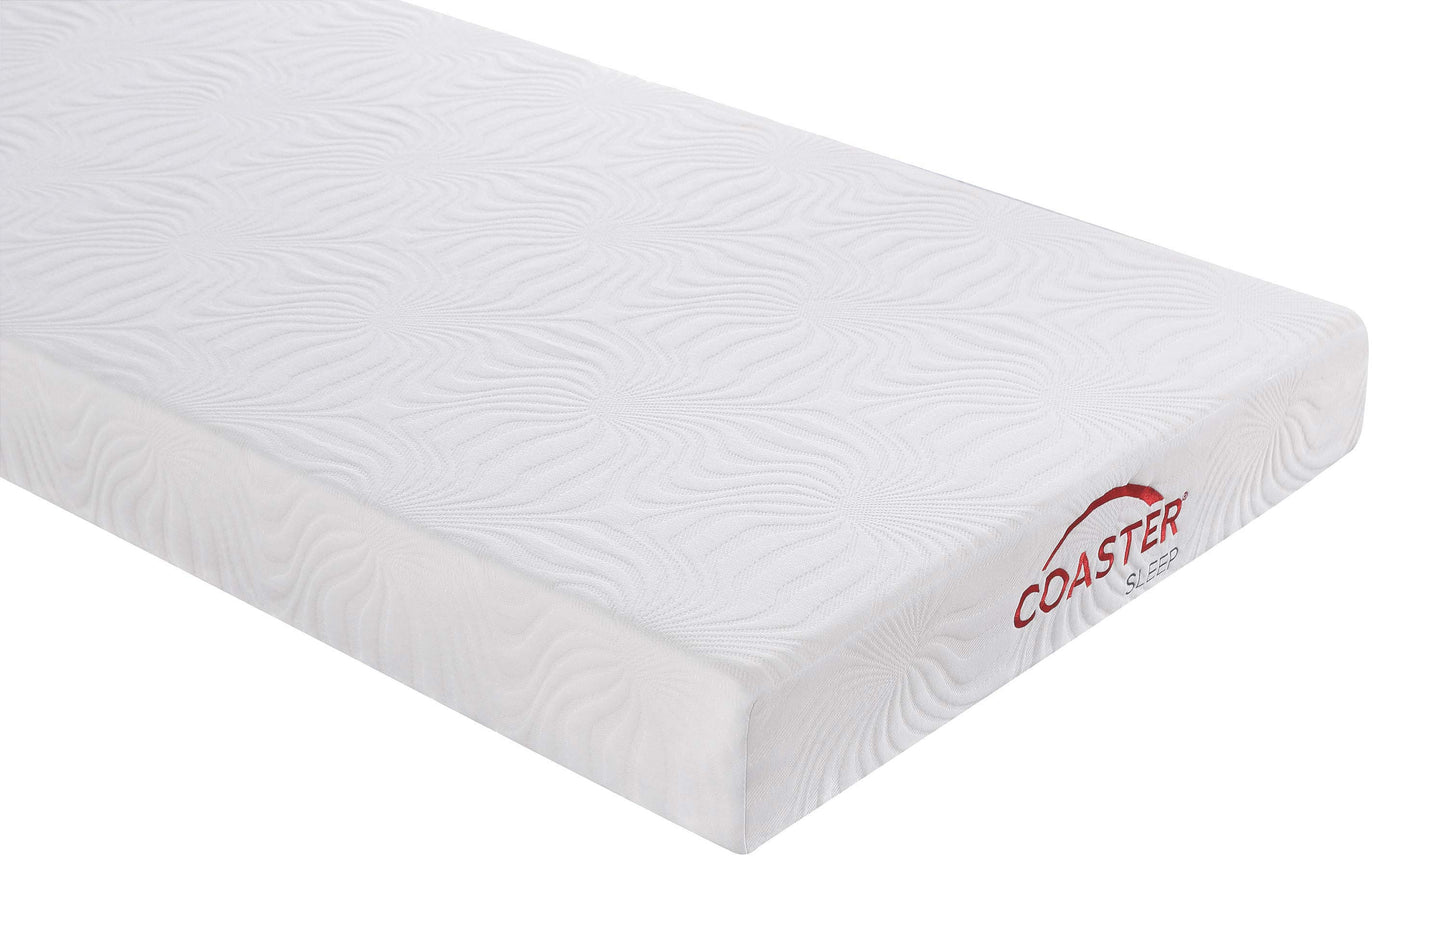 6" twin memory foam mattress